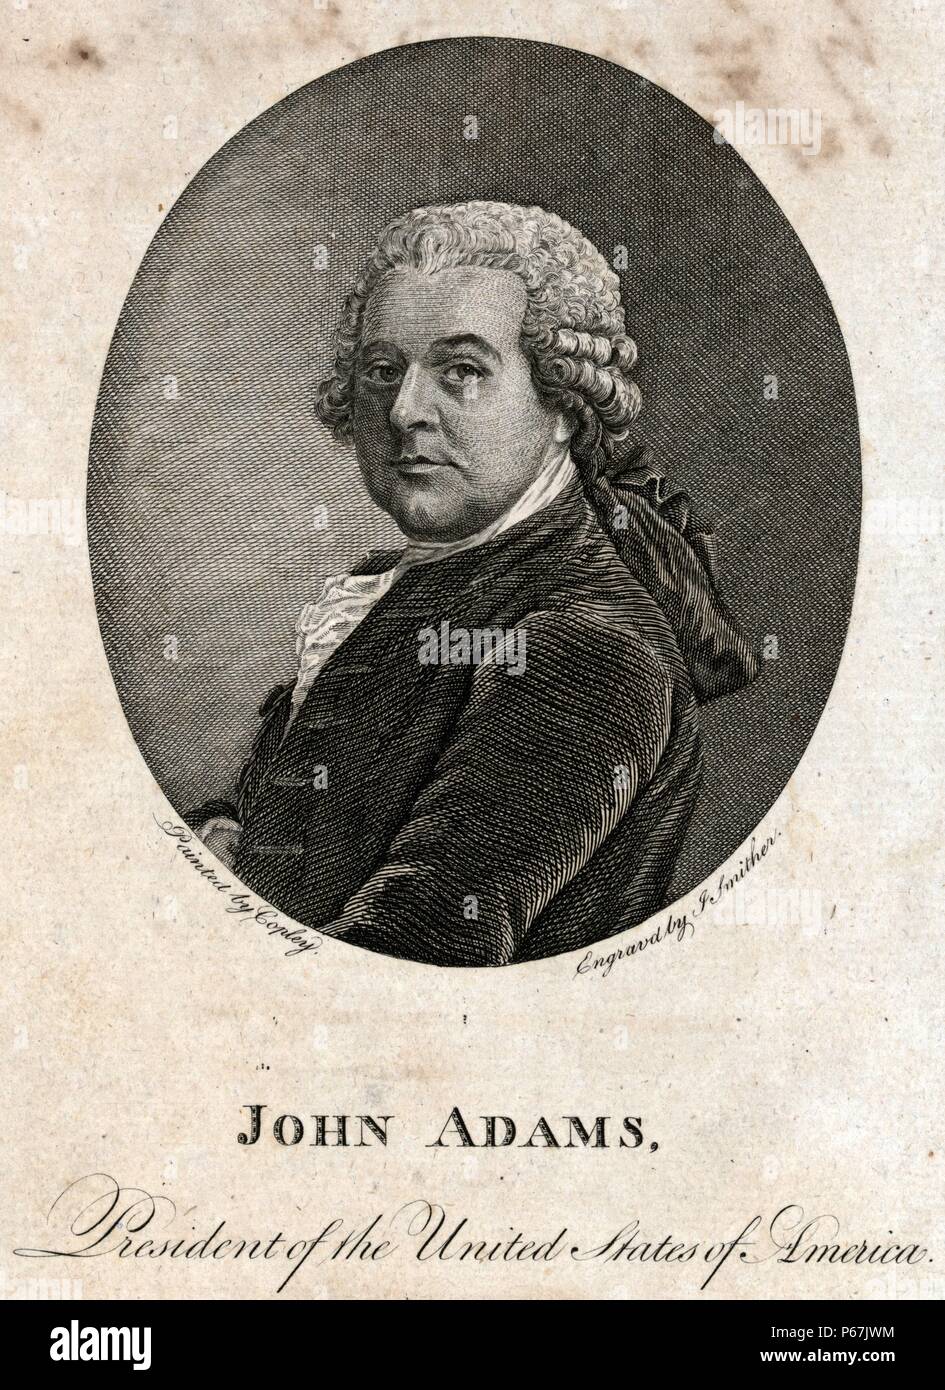 John Adams, der Präsident der Vereinigten Staaten von Amerika. Adams war der zweite Präsident der Vereinigten Staaten, die bereits als erster Vizepräsident des Landes. Er war auch einer der Gründerväter der USA. Stockfoto